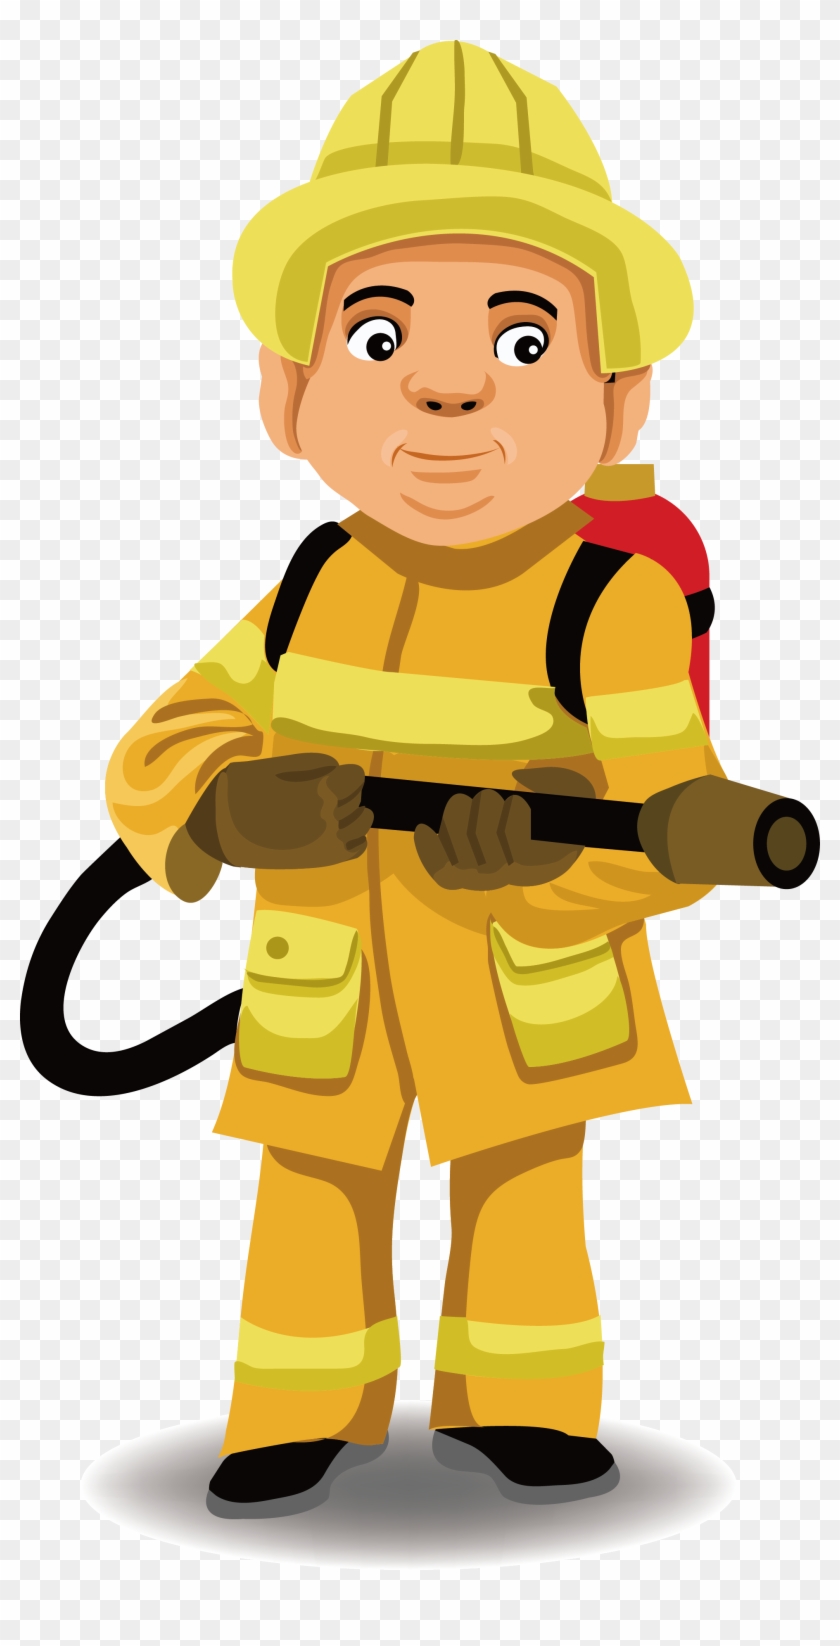 Police Officer Firefighter Firefighting Illustration - การ์ตูน นัก ดับ เพลิง #455965